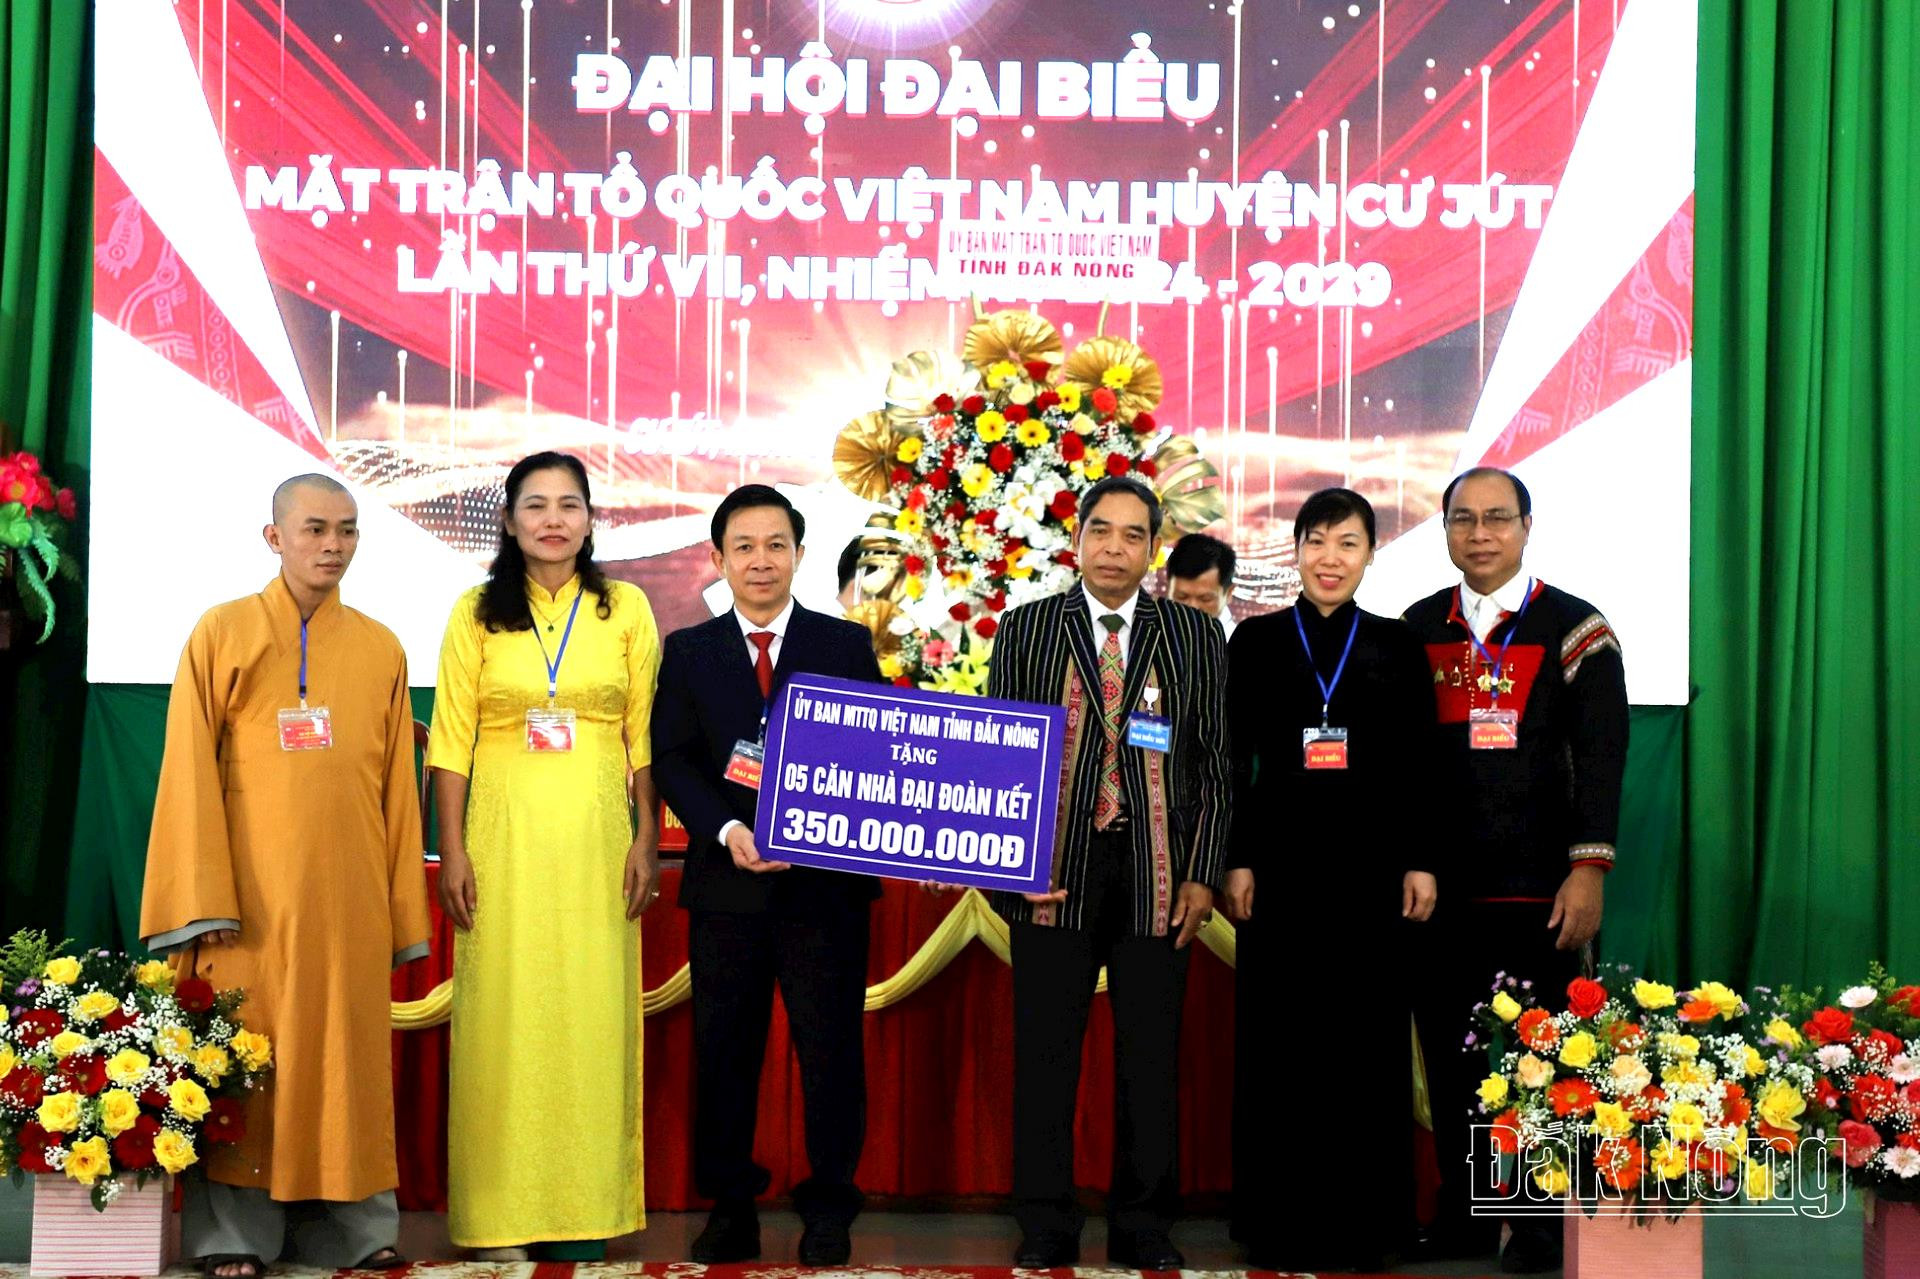 Đồng chí Điểu Xuân Hùng, UVBTV, Chủ tịch Ủy ban MTTQVN tỉnh Đắk Nông tặng hoa chúc mừng đại hội và tặng Ủy ban MTTQ huyện Cư Jút 350 triệu đồng để xây nhà Đại đoàn kết cho người nghèo